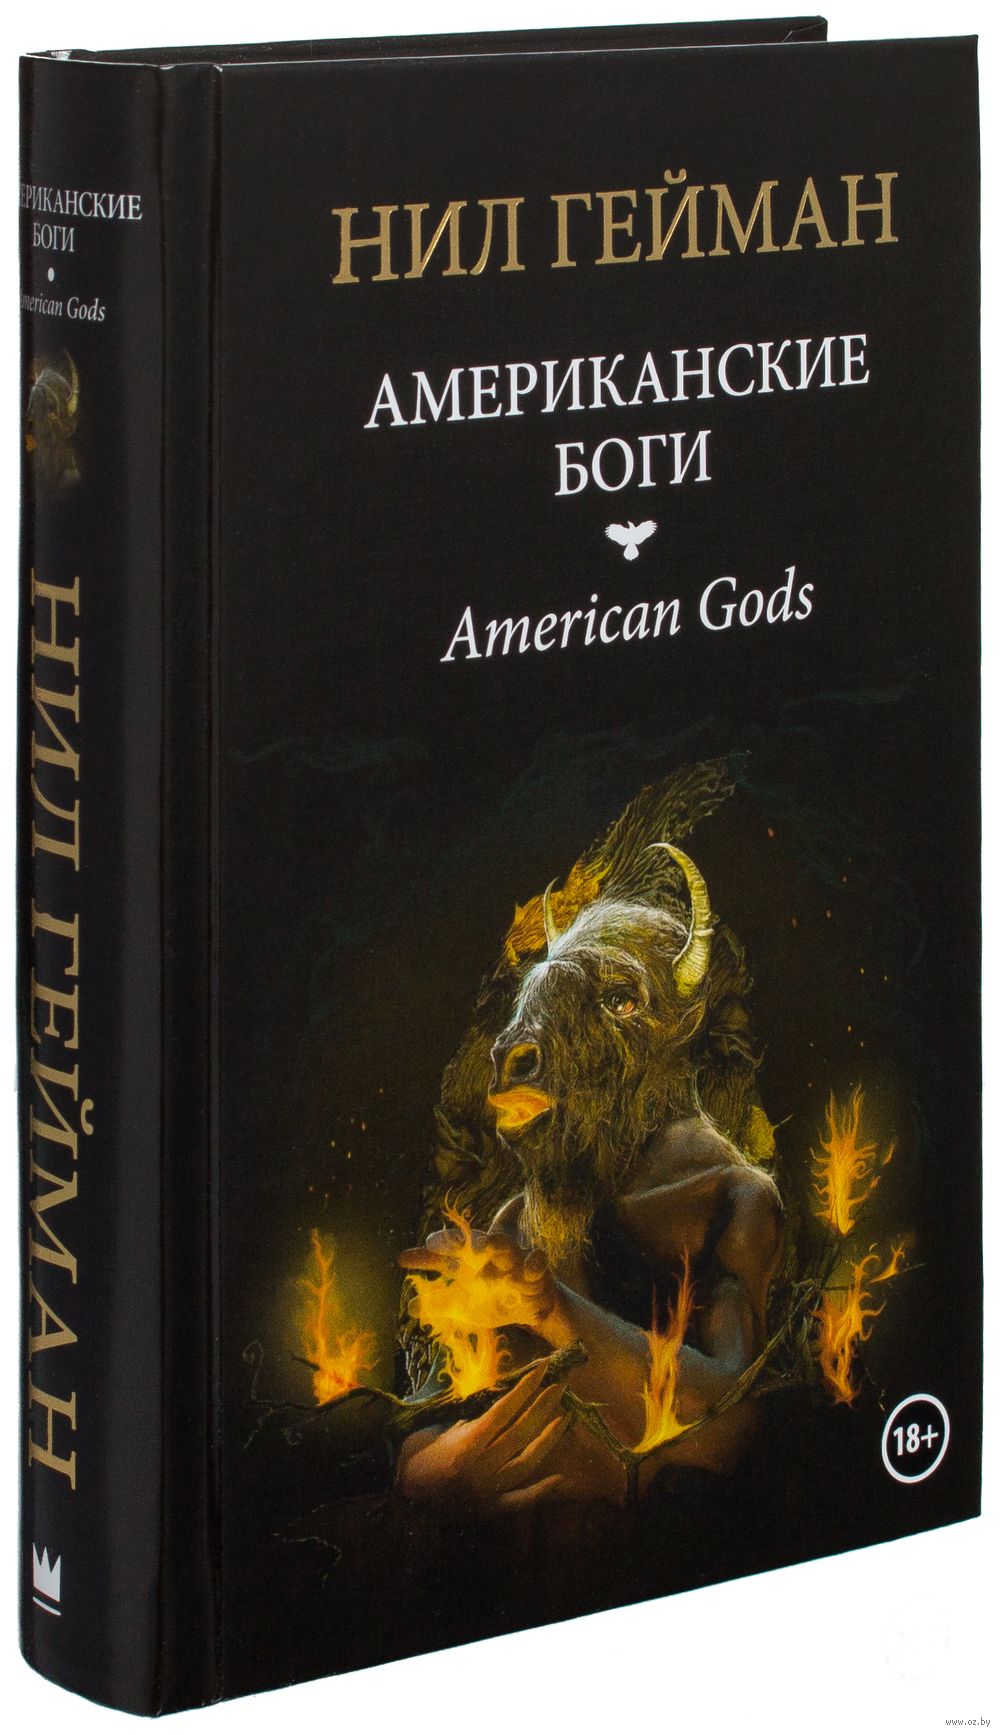 Скачать книгу американские боги